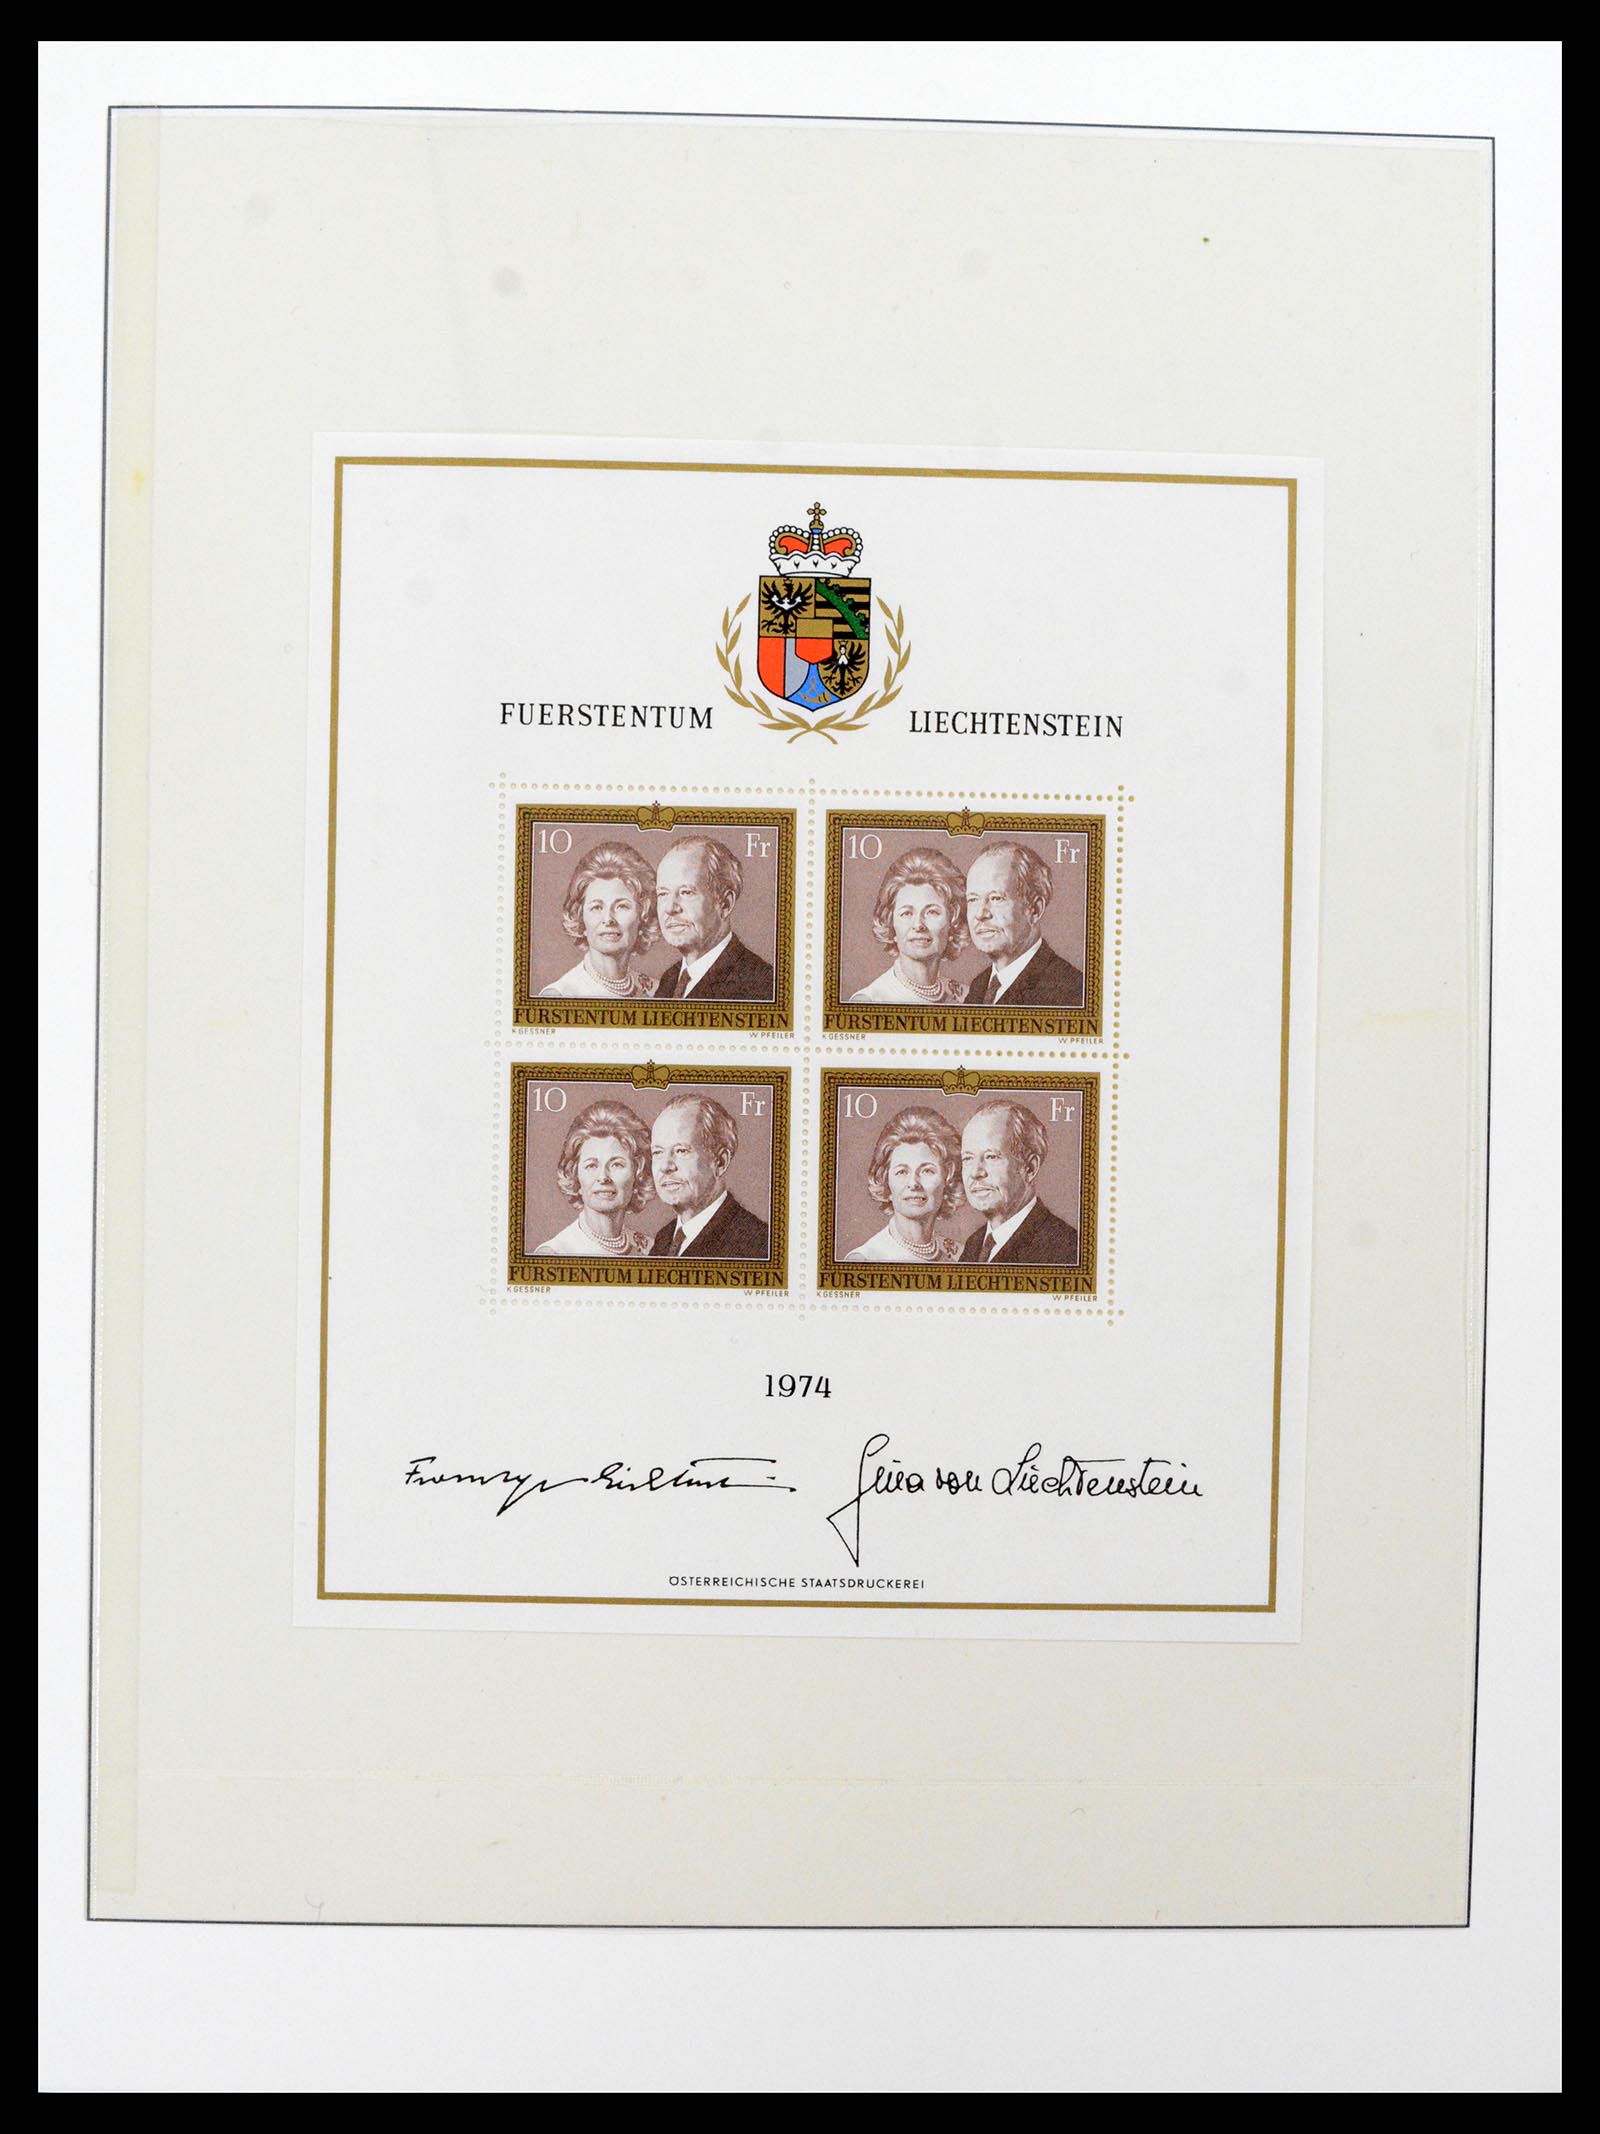 37293 061 - Stamp collection 37293 Liechtenstein 1912-2003.